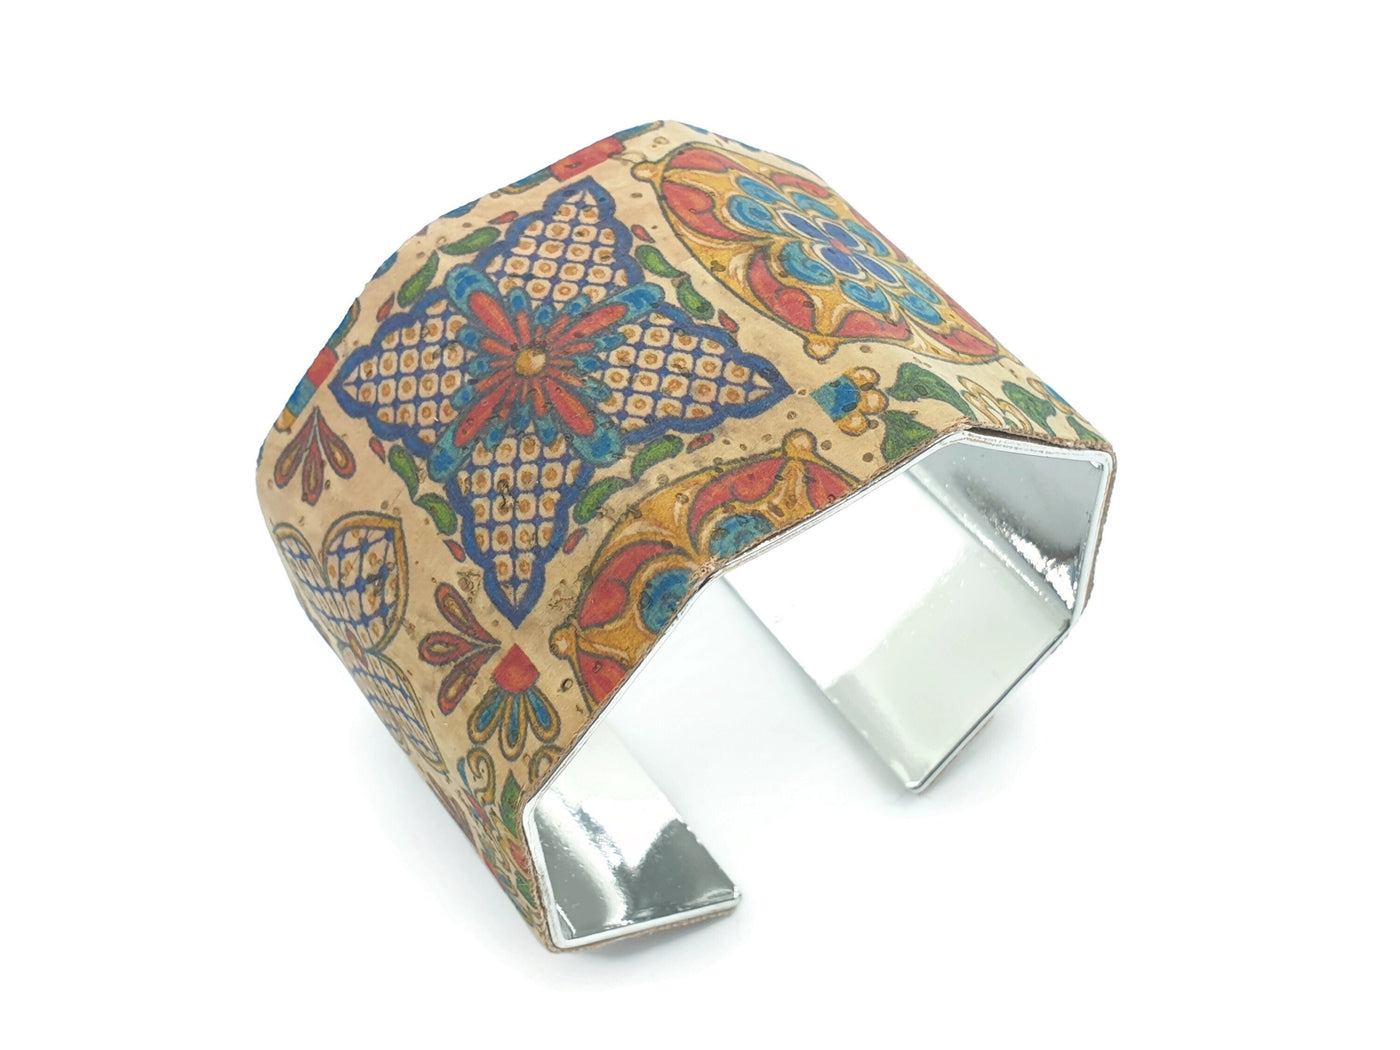 FRANCISCA - Mexico Tile Cork Cuff Bracelet